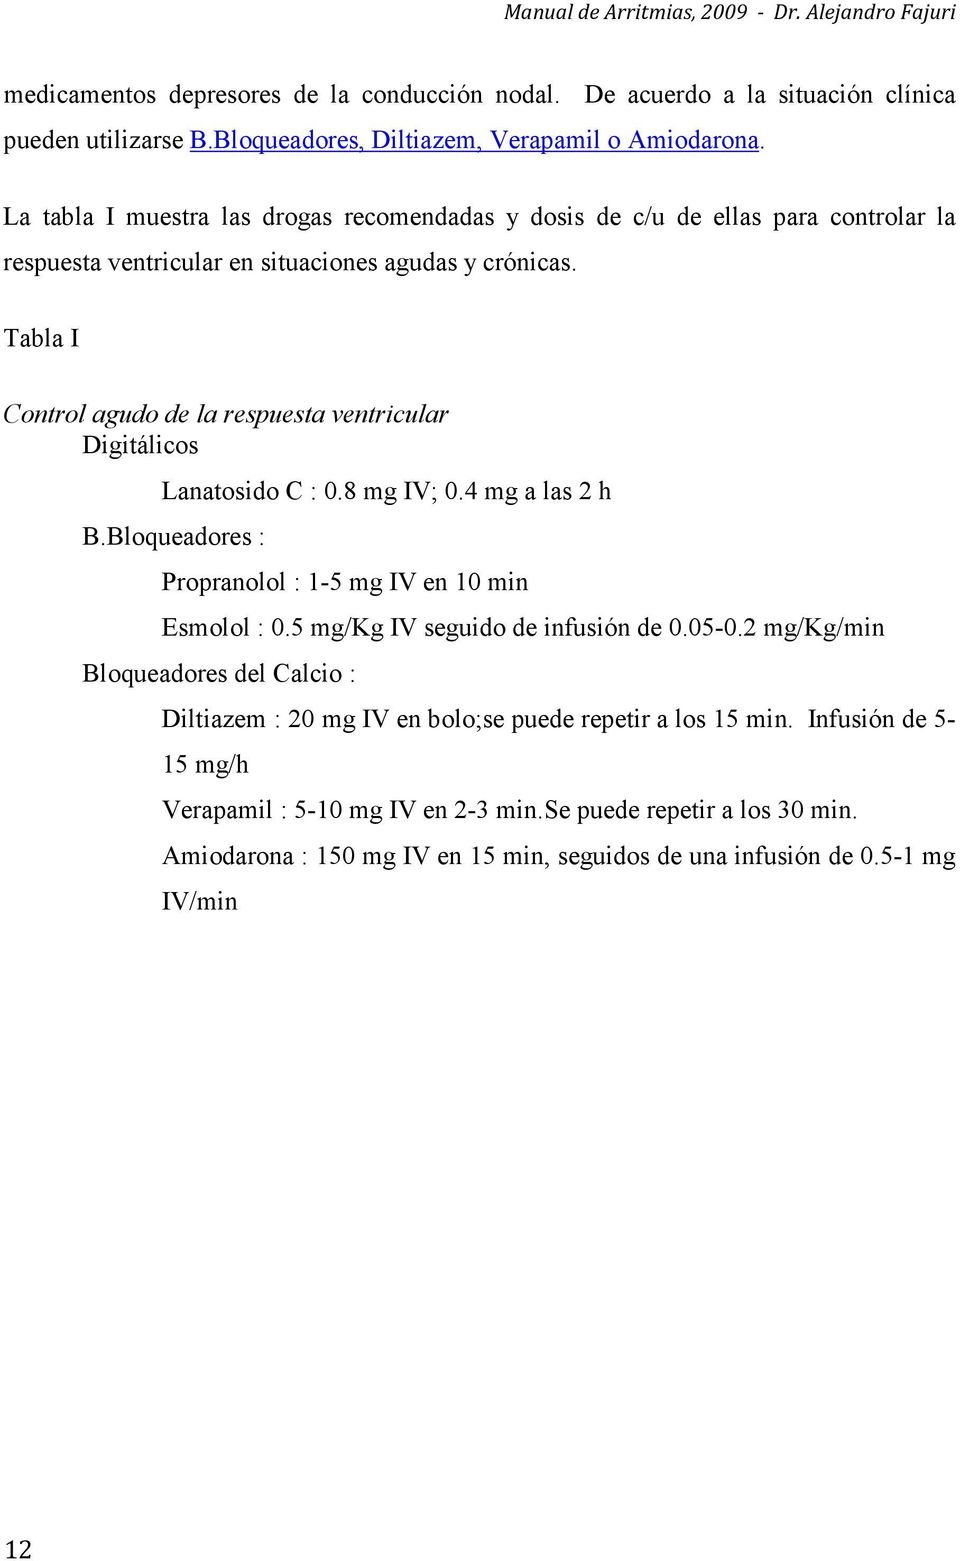 Tabla I Control agudo de la respuesta ventricular Digitálicos Lanatosido C : 0.8 mg IV; 0.4 mg a las 2 h B.Bloqueadores : Propranolol : 1-5 mg IV en 10 min Esmolol : 0.